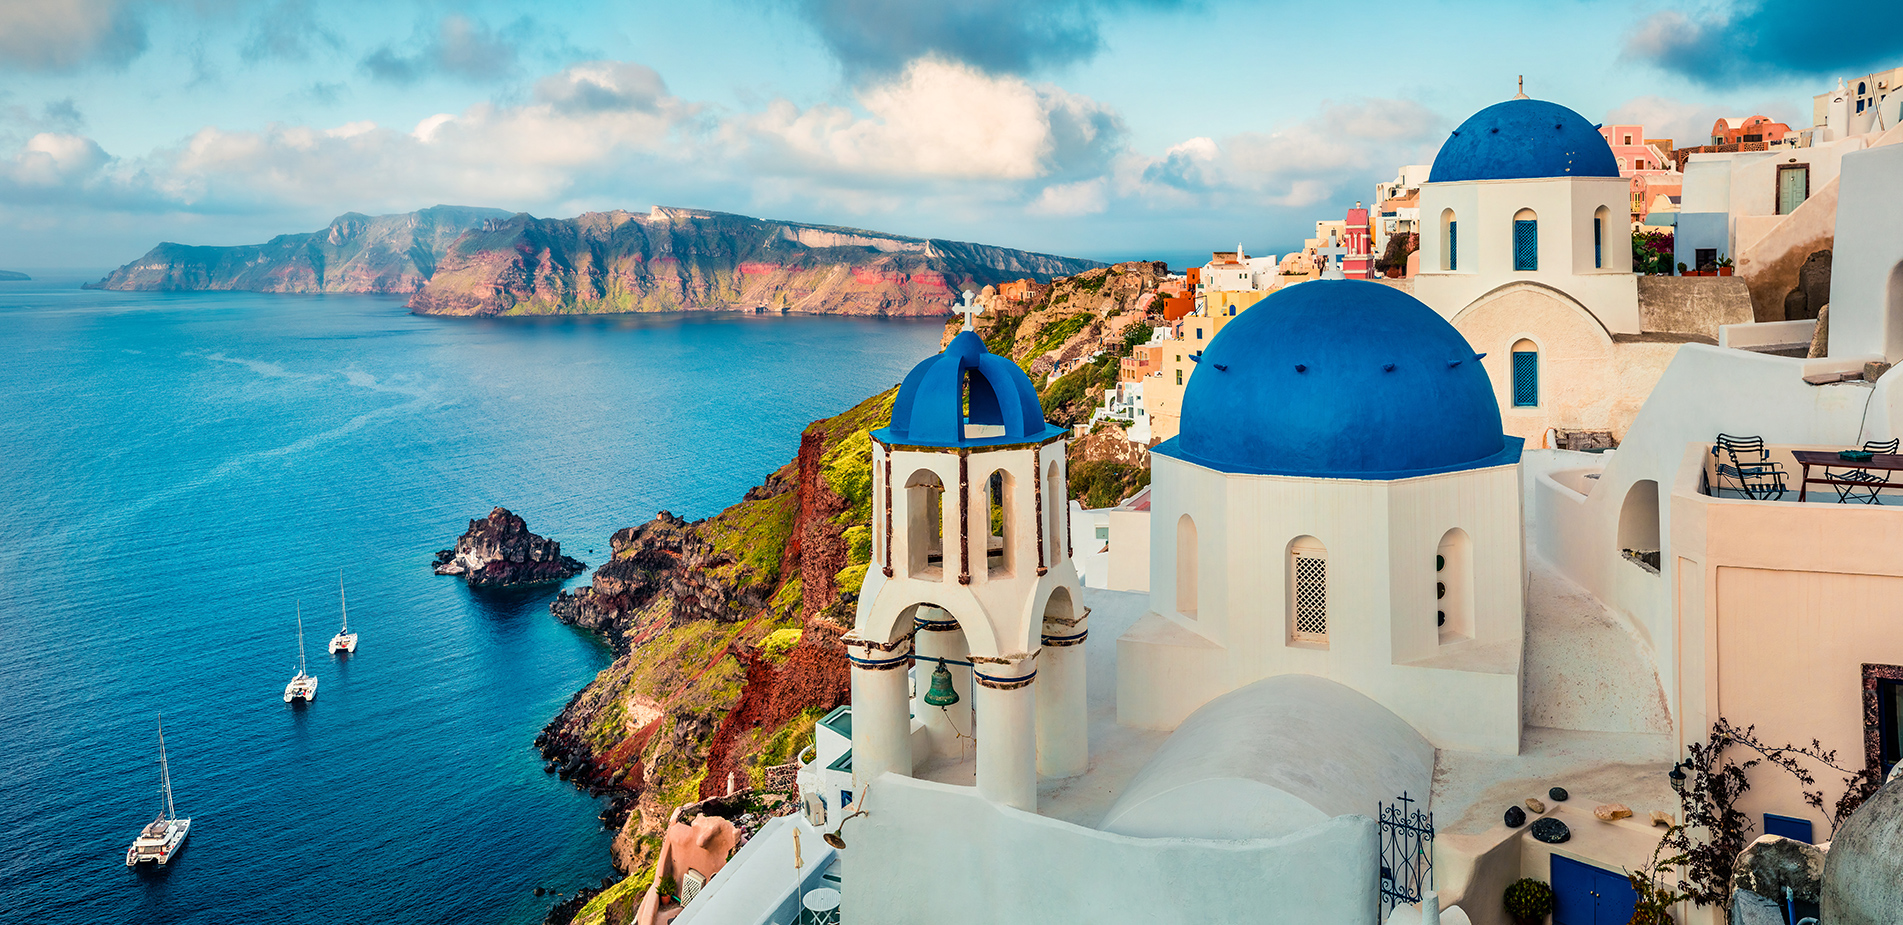 Τι προβλέπουν οι ειδικοί για τις διακοπές: «Από την Αθήνα ως τη Σαντορίνη, υπάρχει κάτι για όλους στην Ελλάδα»